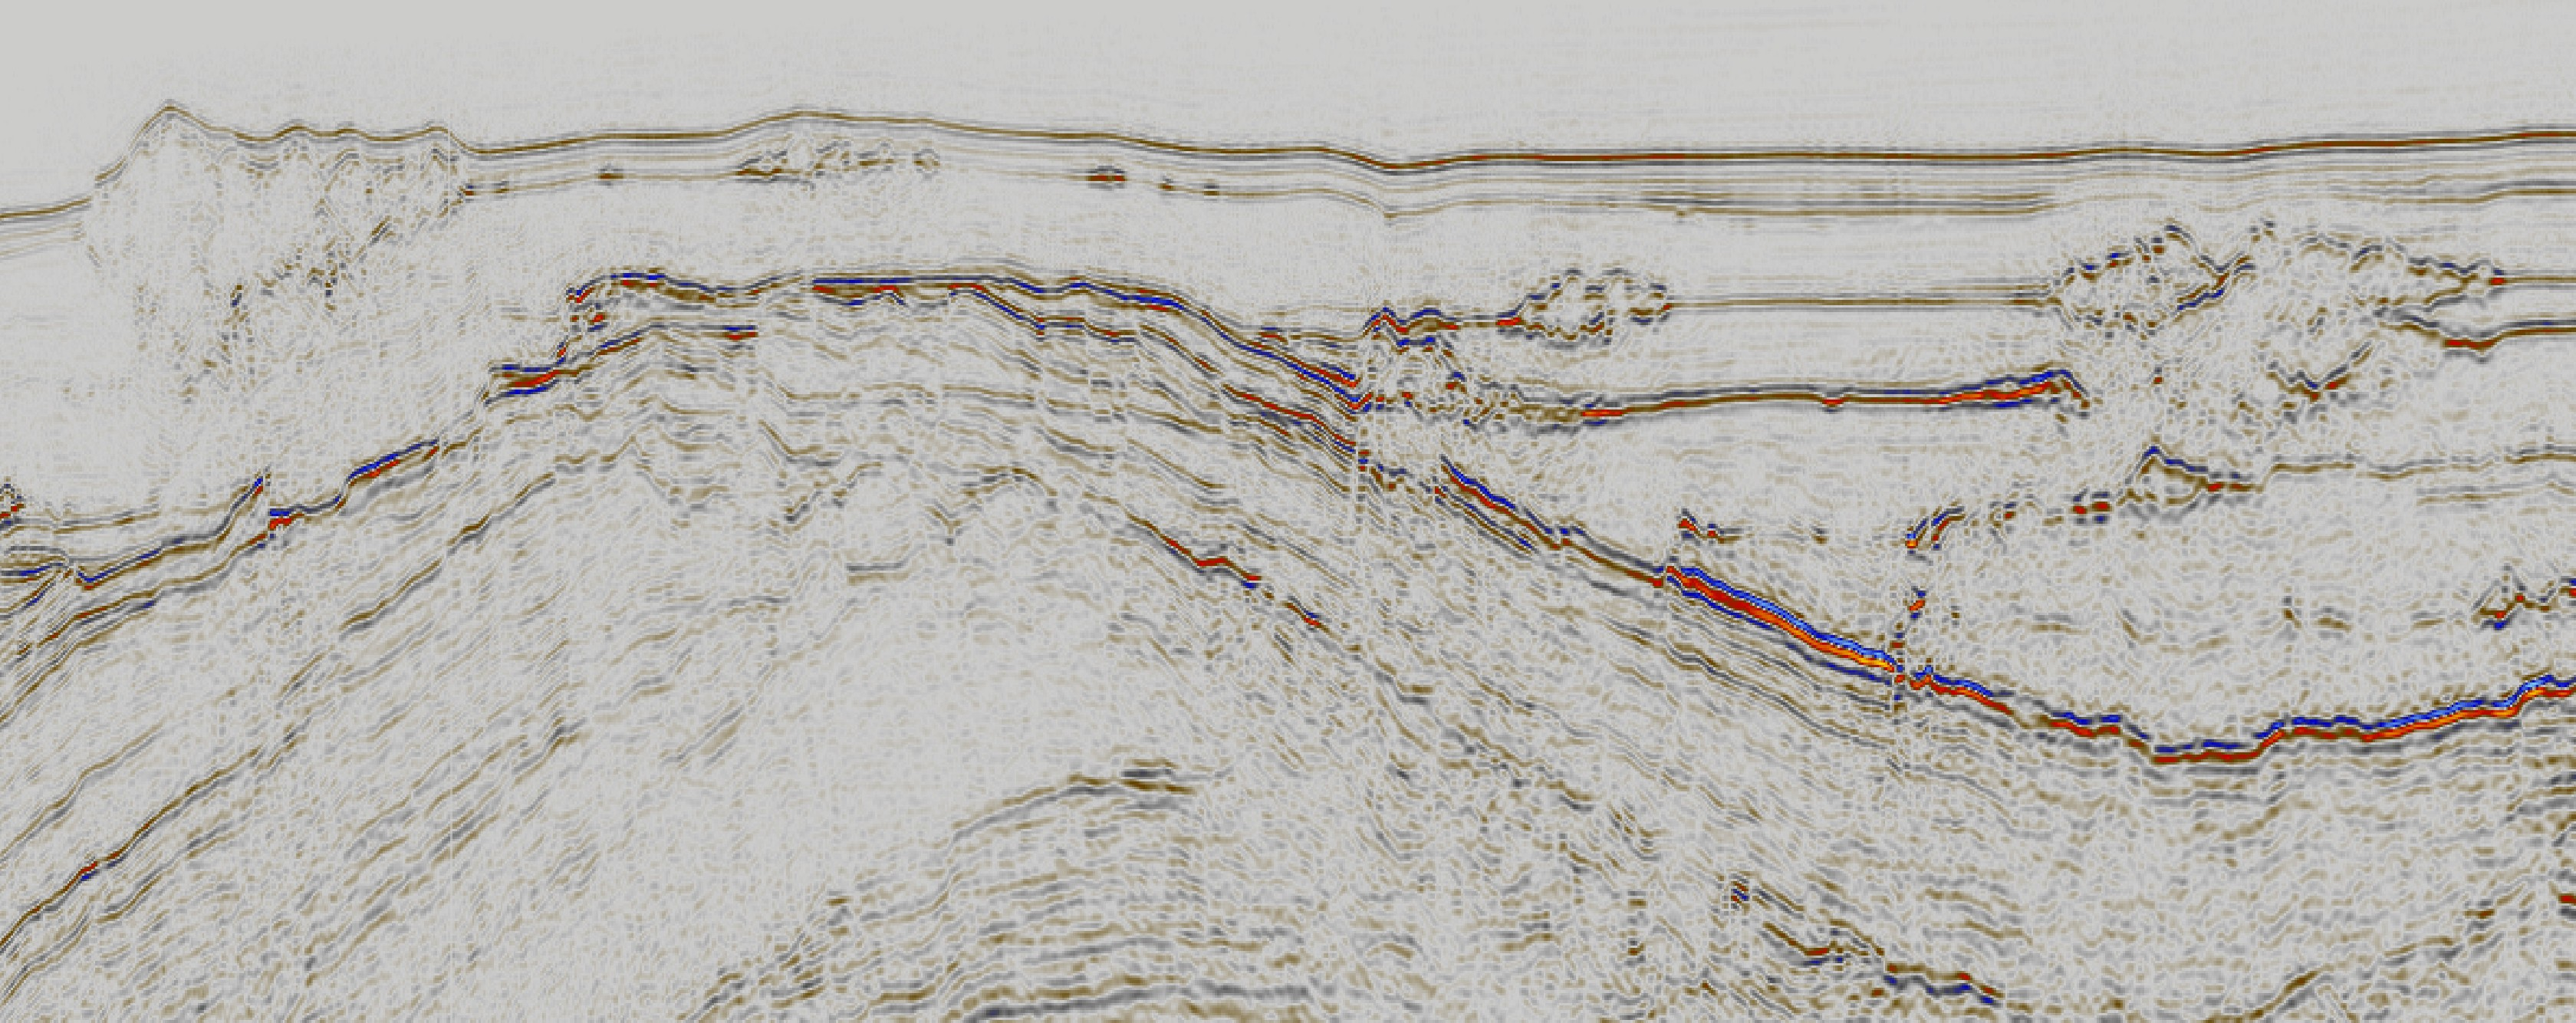 V Ø Figur 1.2. Seismisk linje som viser både havbunnsstrukturer og underliggende linser. Snittet viser Vemadomens relieff med strukturer både langs havbunnen og innen ulike lagpakker.